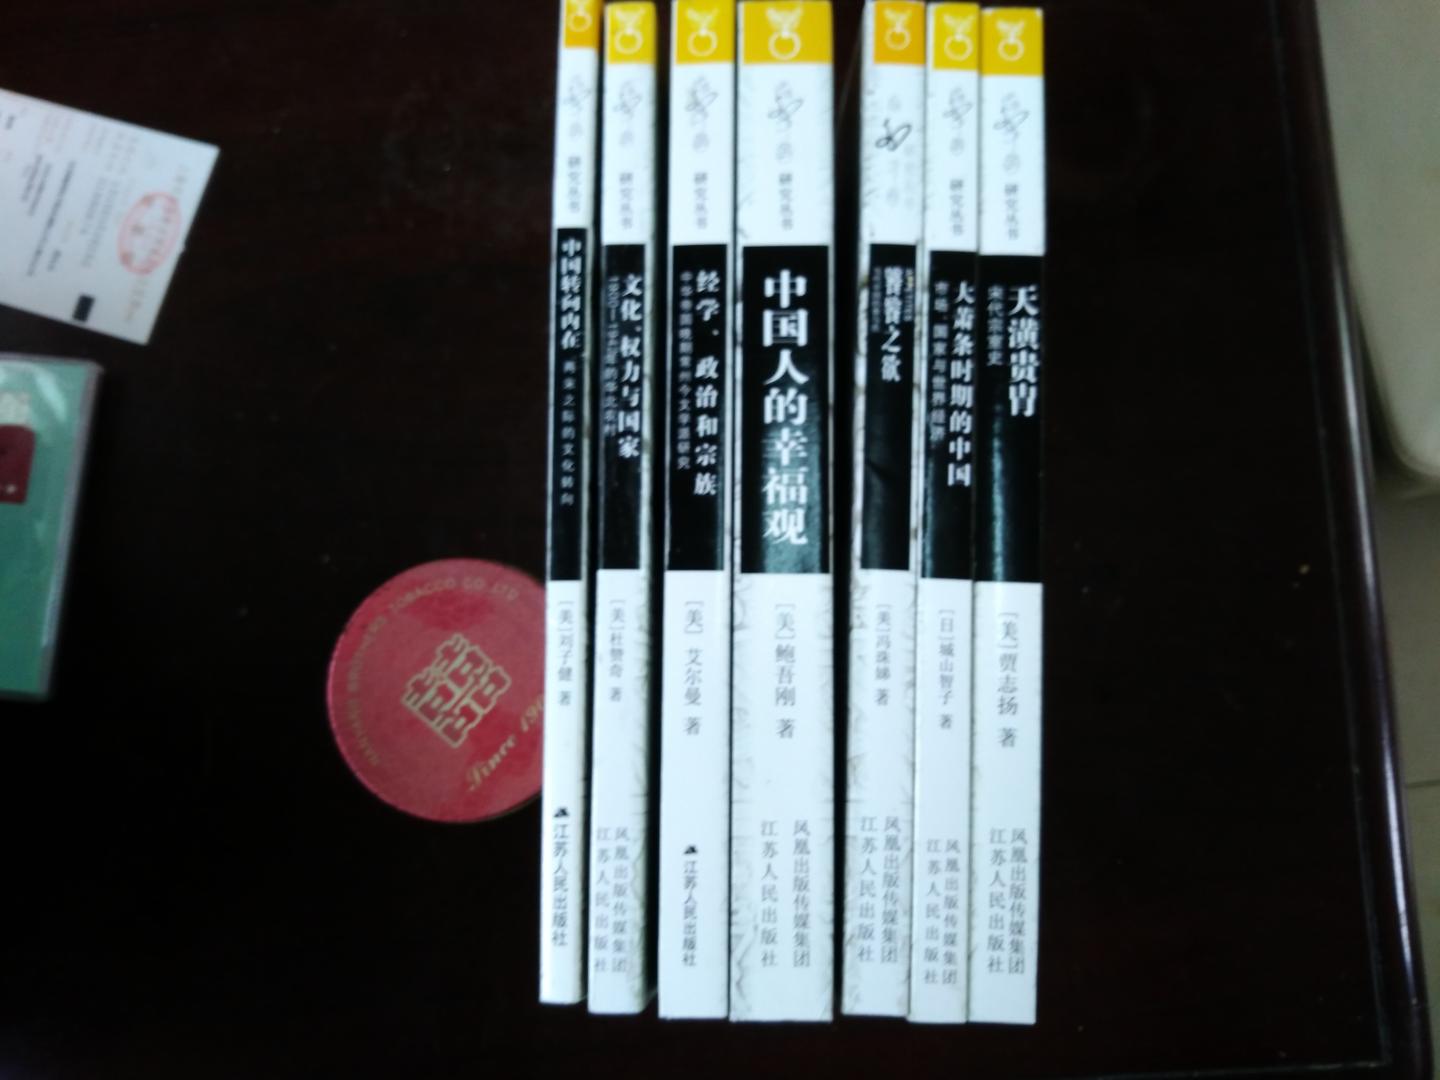 海外中国研究丛书收了大概有50多本了，都是很耐看的，推荐。